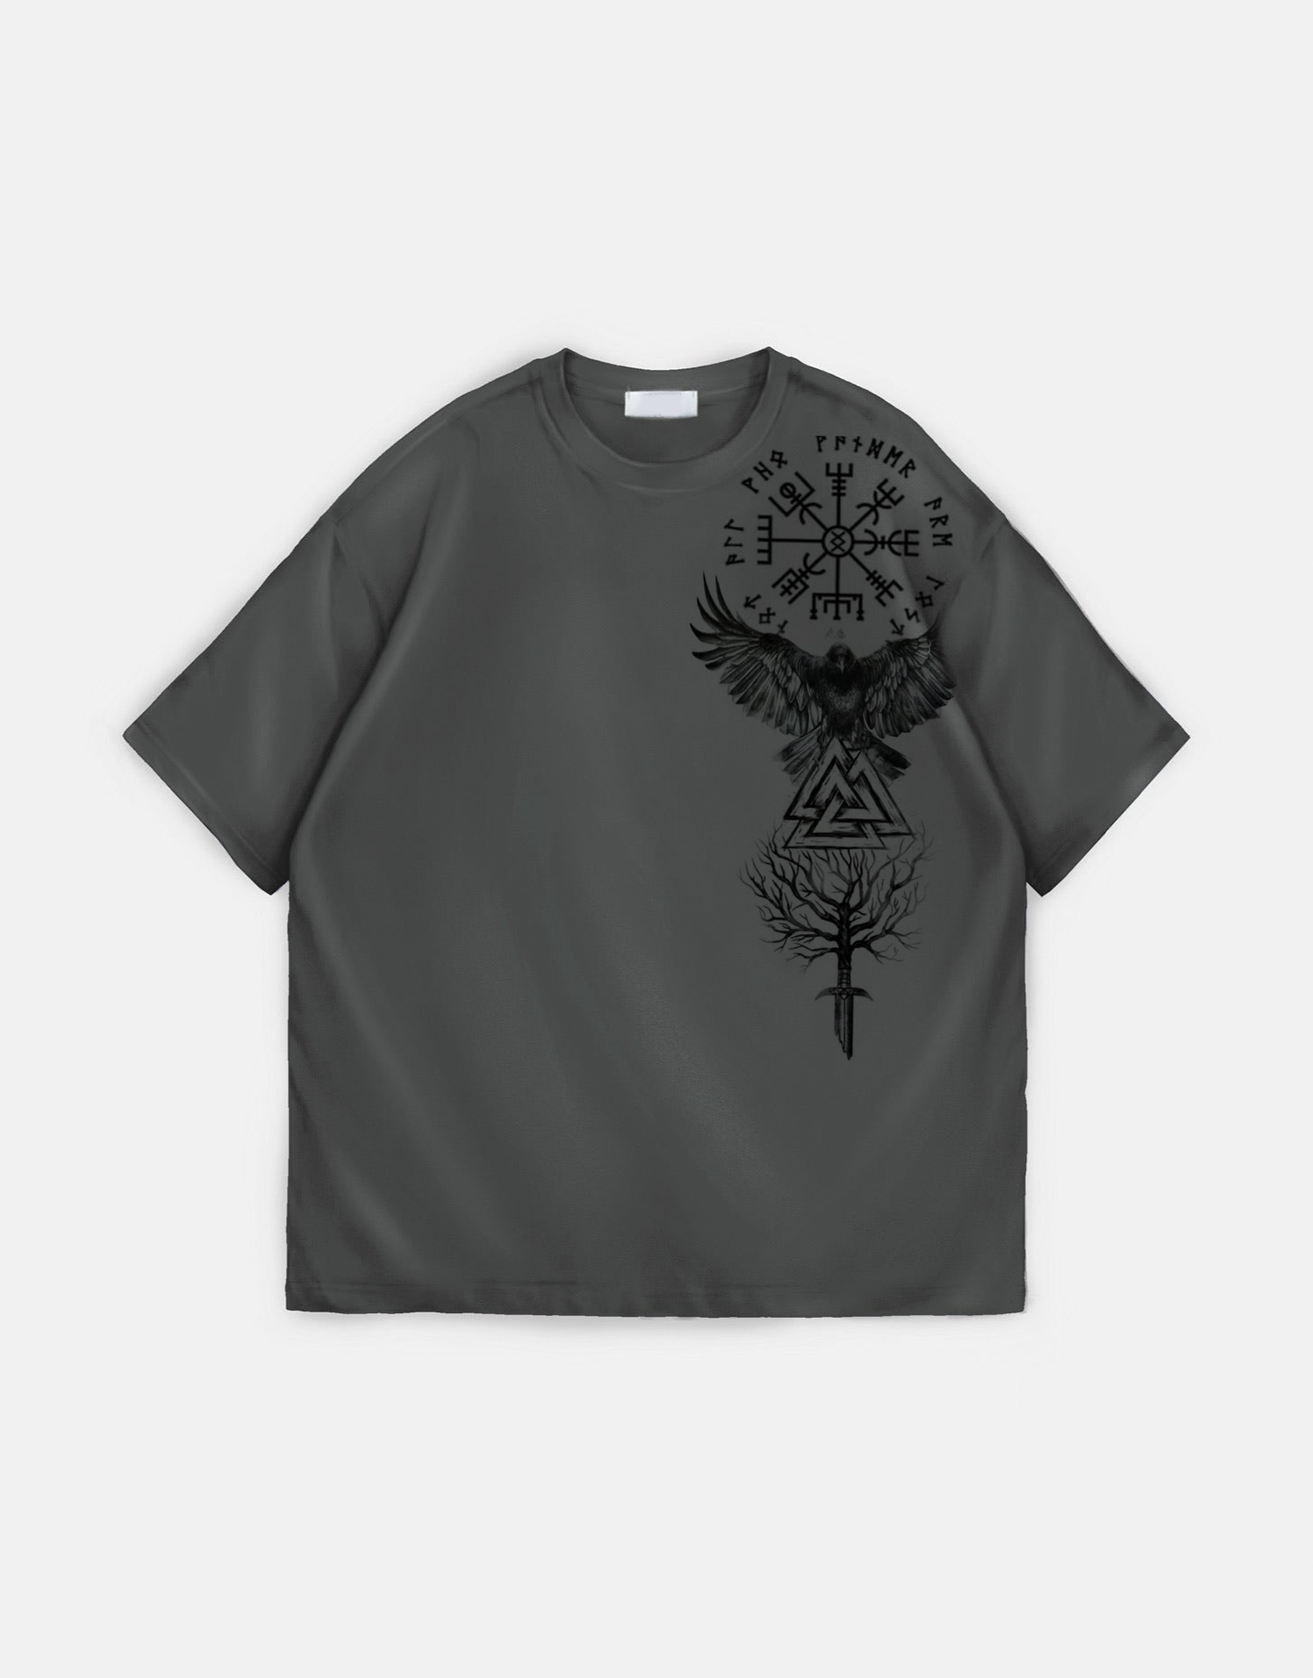 Viking Crow Tattoo Totem T-shirt / TECHWEAR CLUB / Techwear